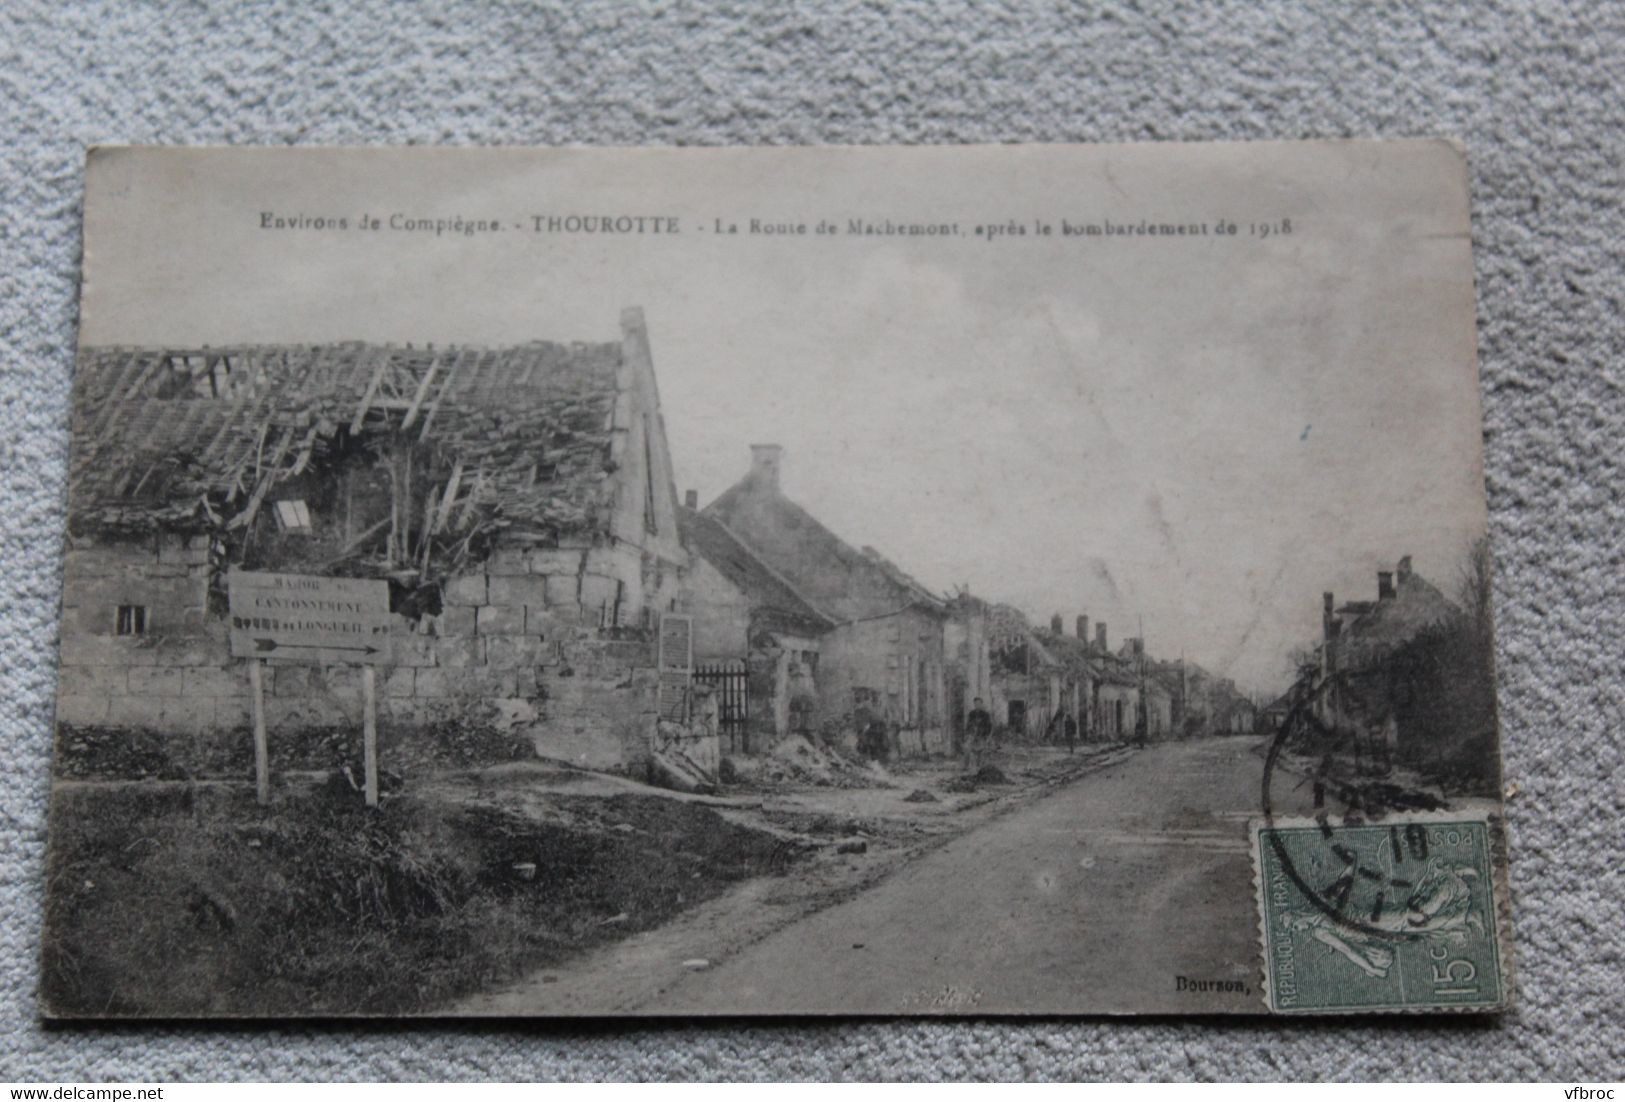 Cpa 1919, Thourotte, La Route De Machemont Après Le Bombardement, Militaria, Oise 60 - Thourotte